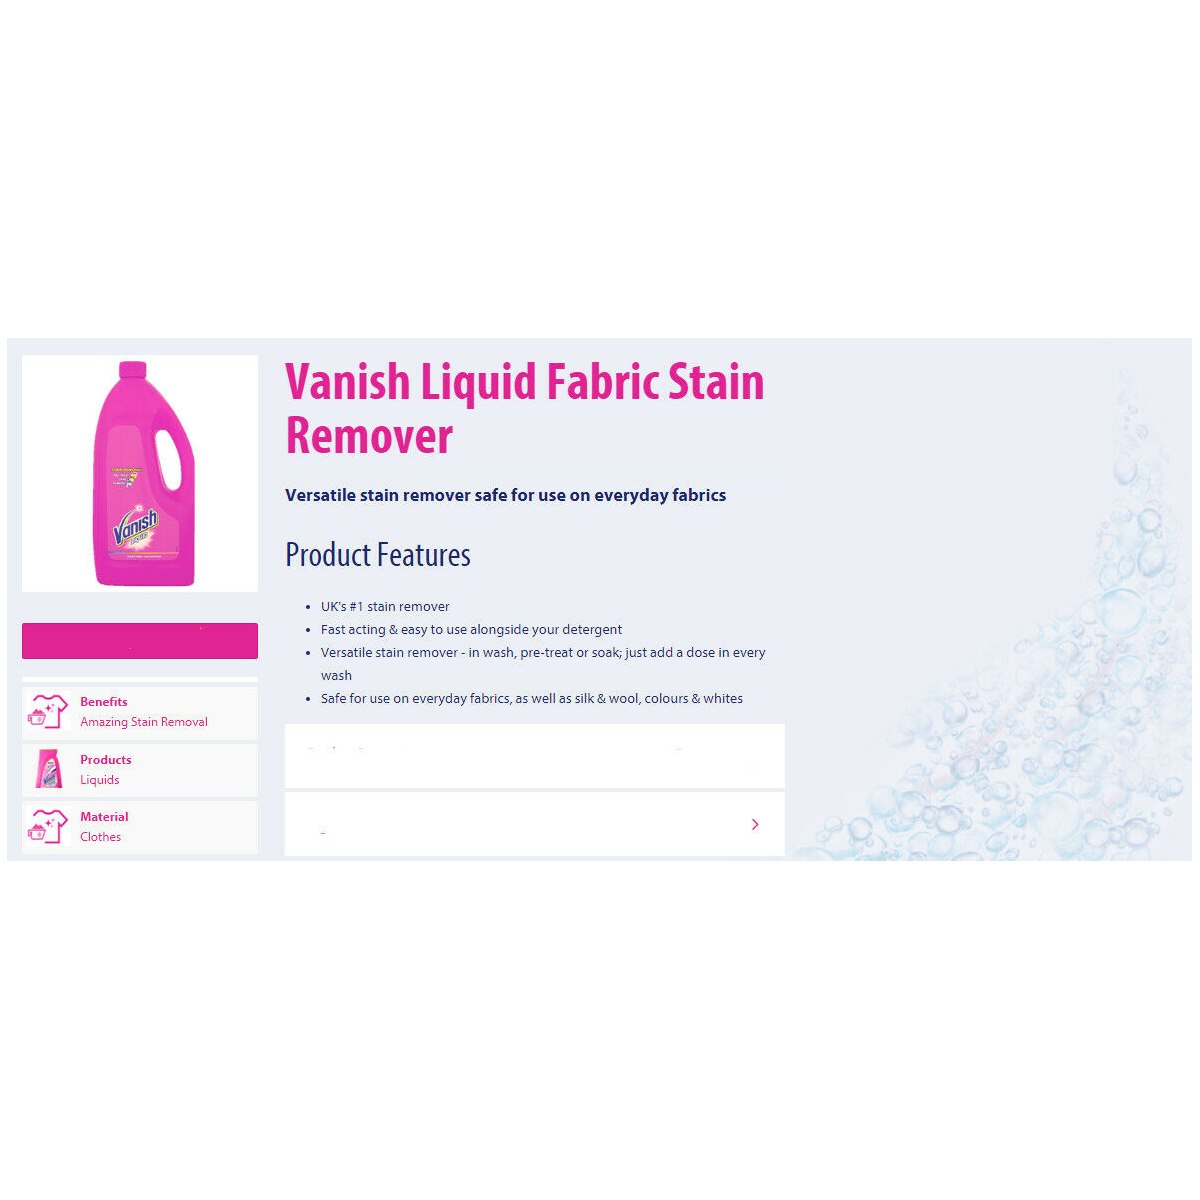 Vanish Liquid Fabric Stain Remover